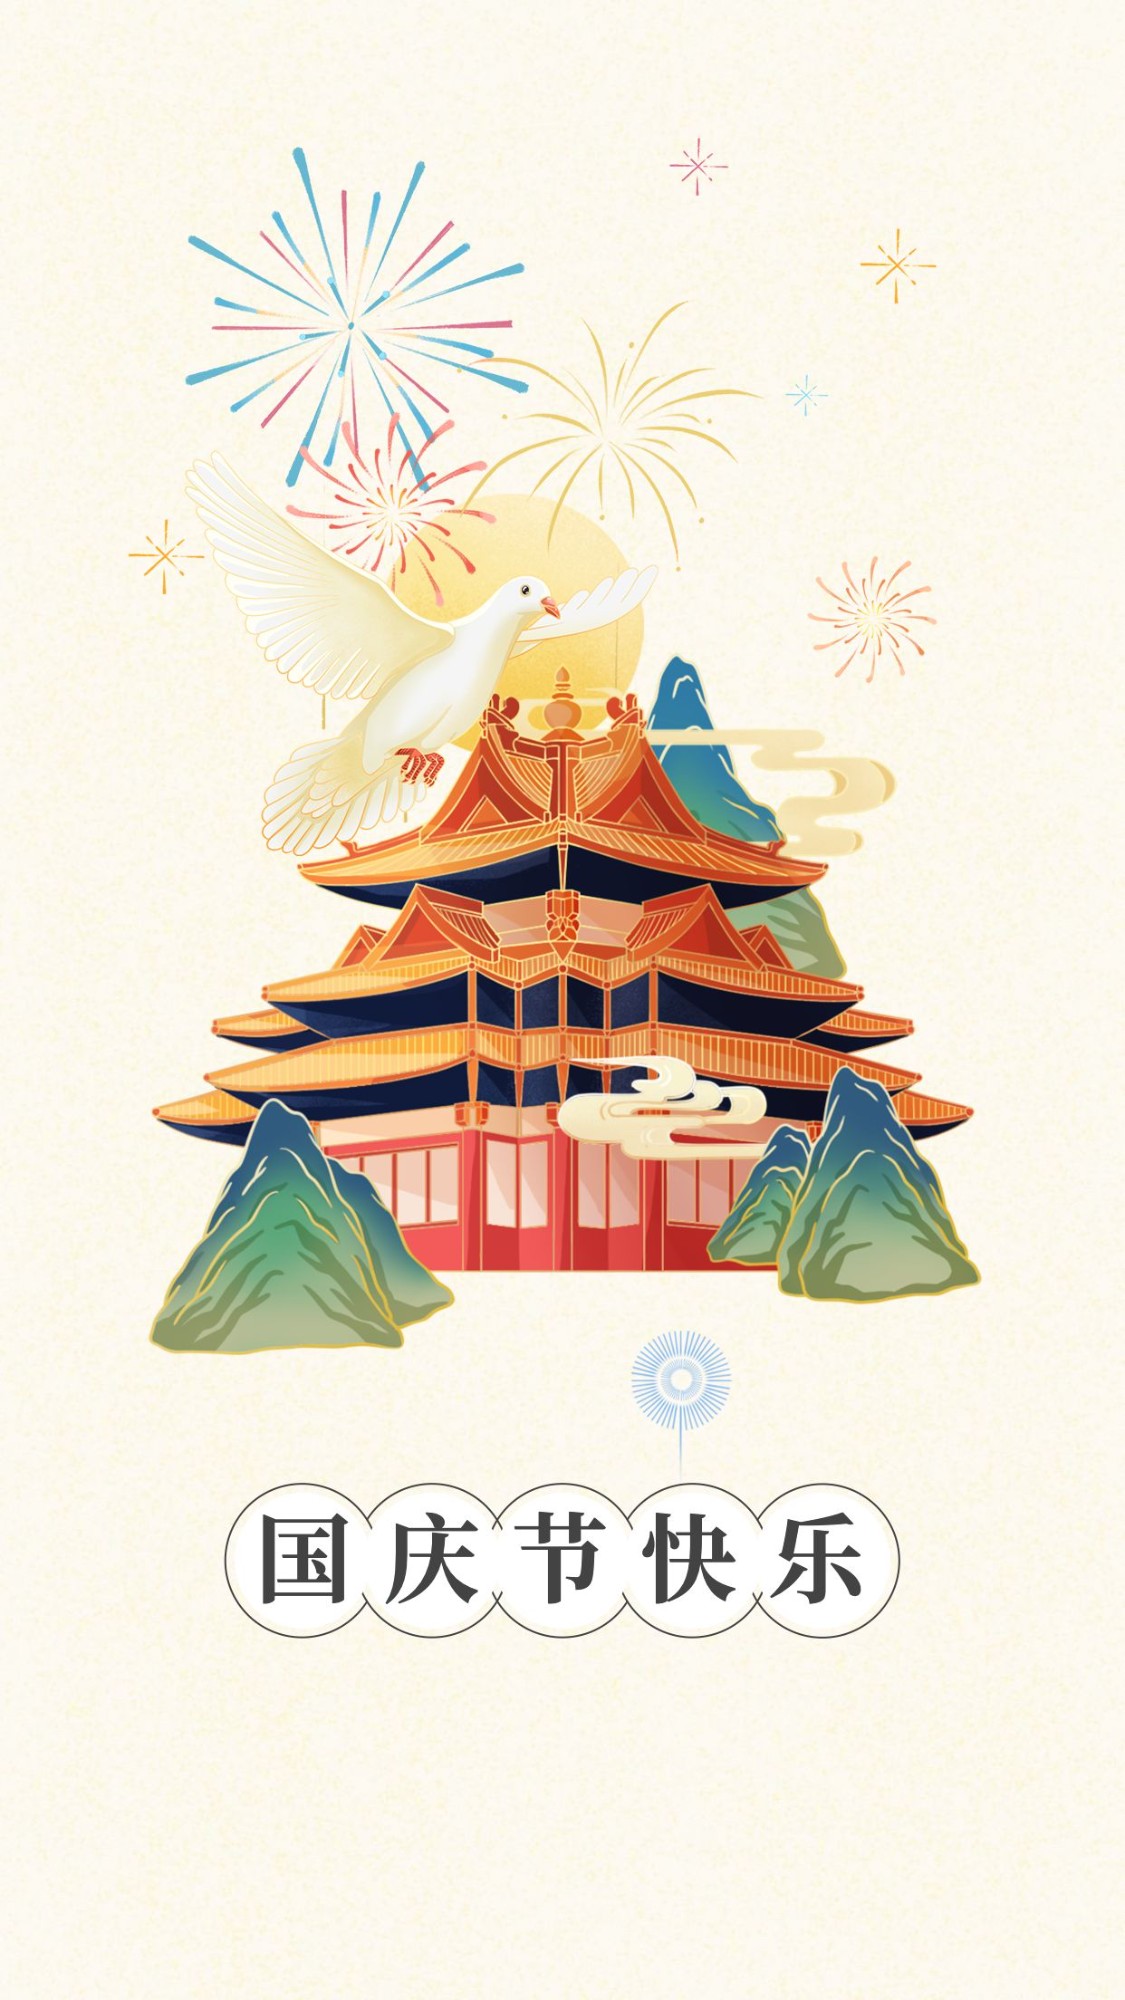 国庆节快乐祝福手绘中国风贺卡